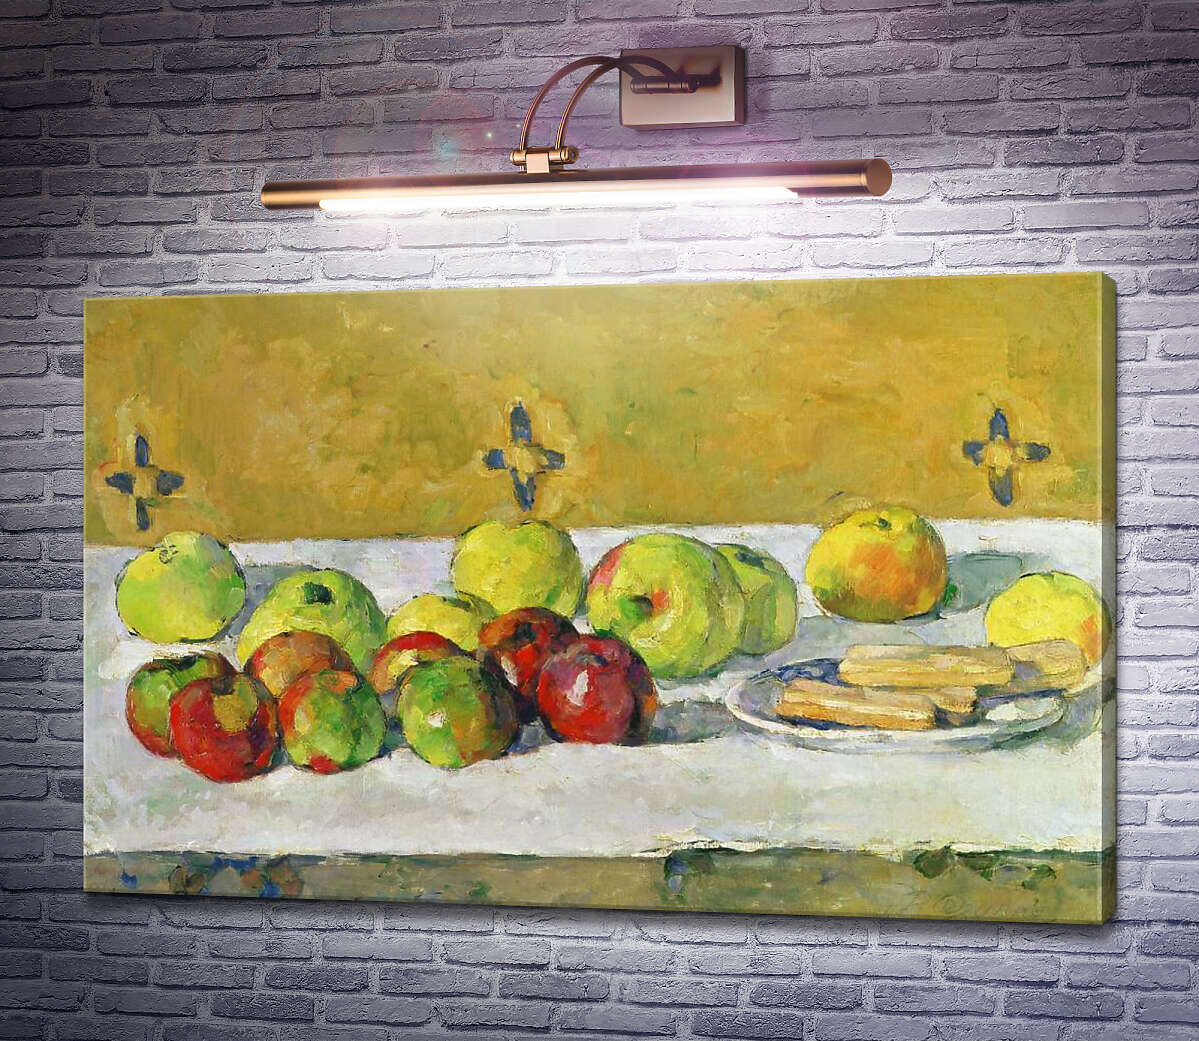 Картина Яблоки и бисквиты Поль Сезанн